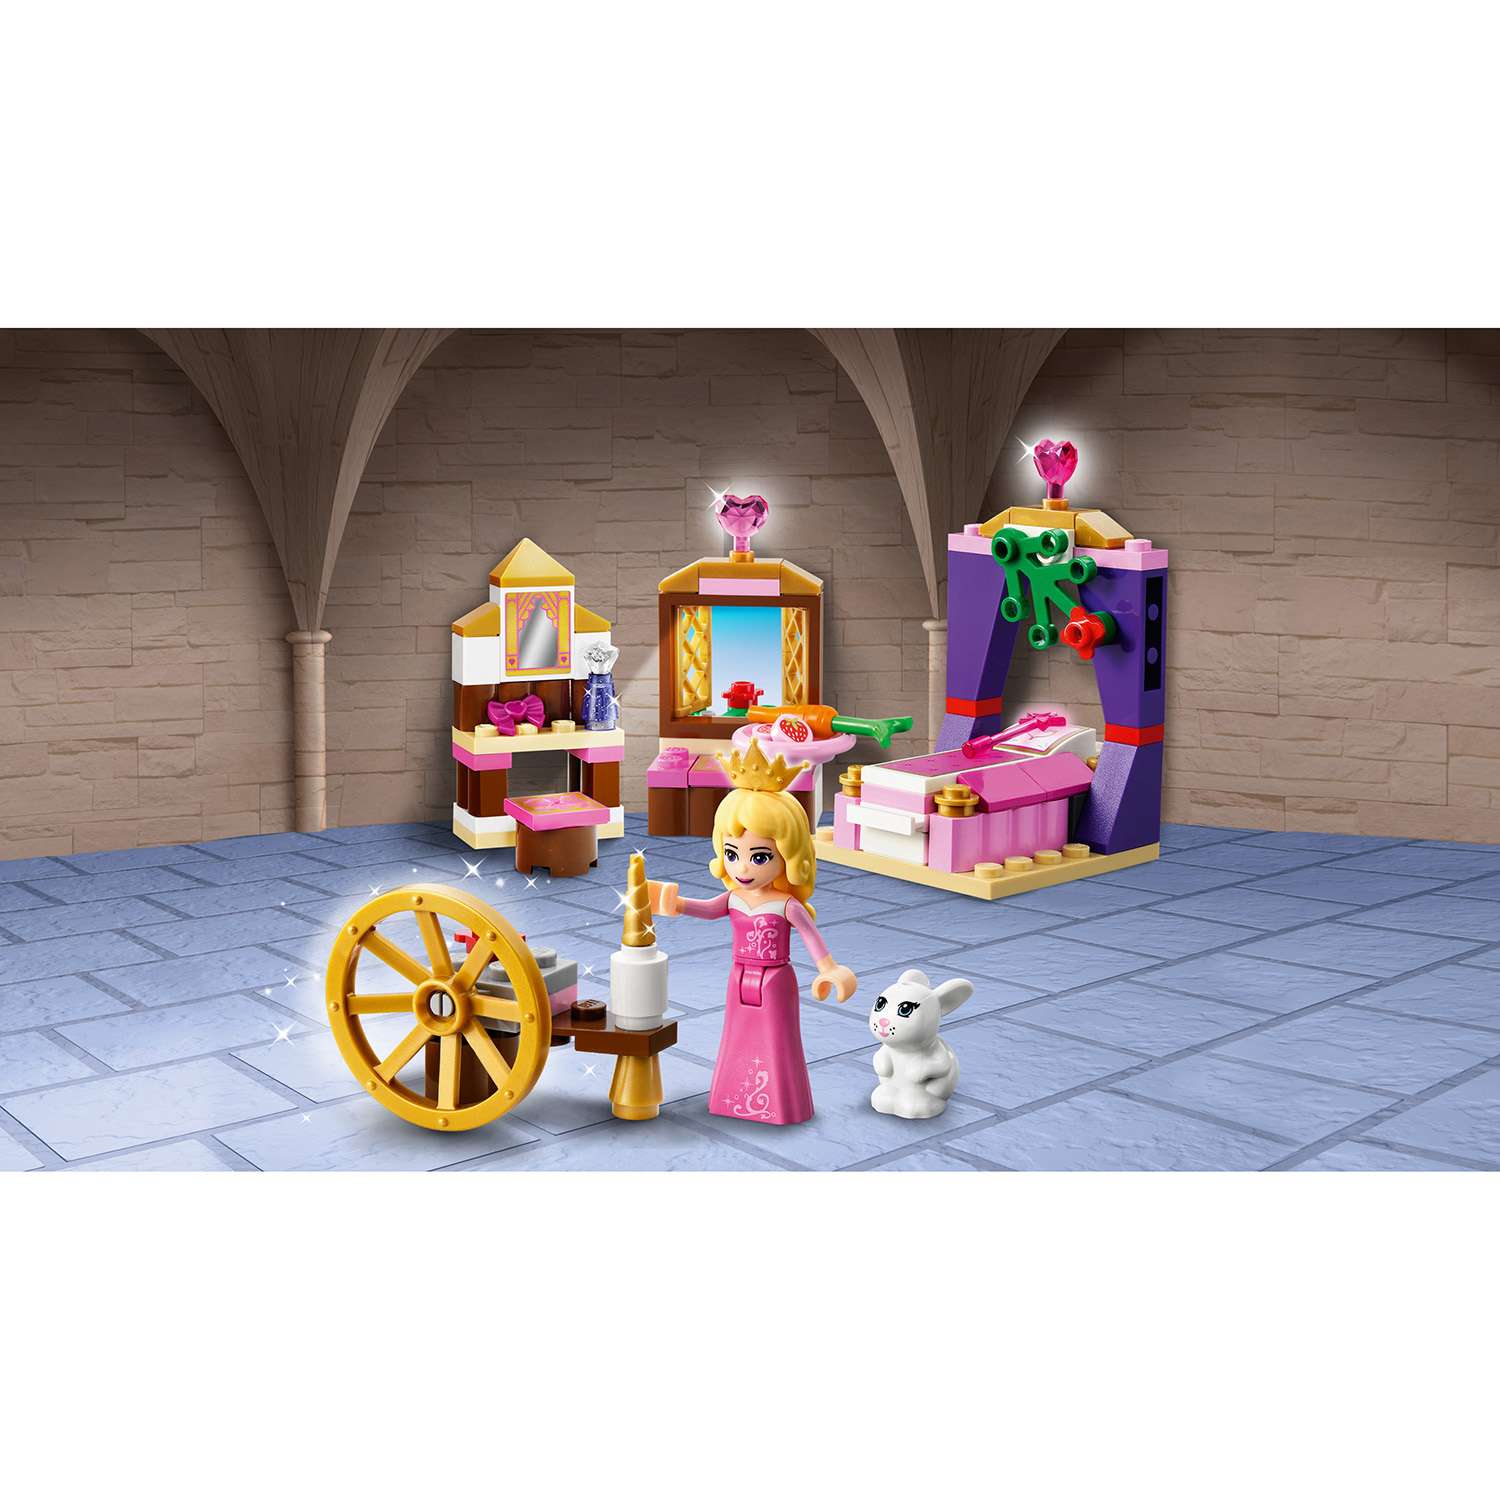 Конструктор LEGO Disney Princess Спальня Спящей красавицы (41060) - фото 4